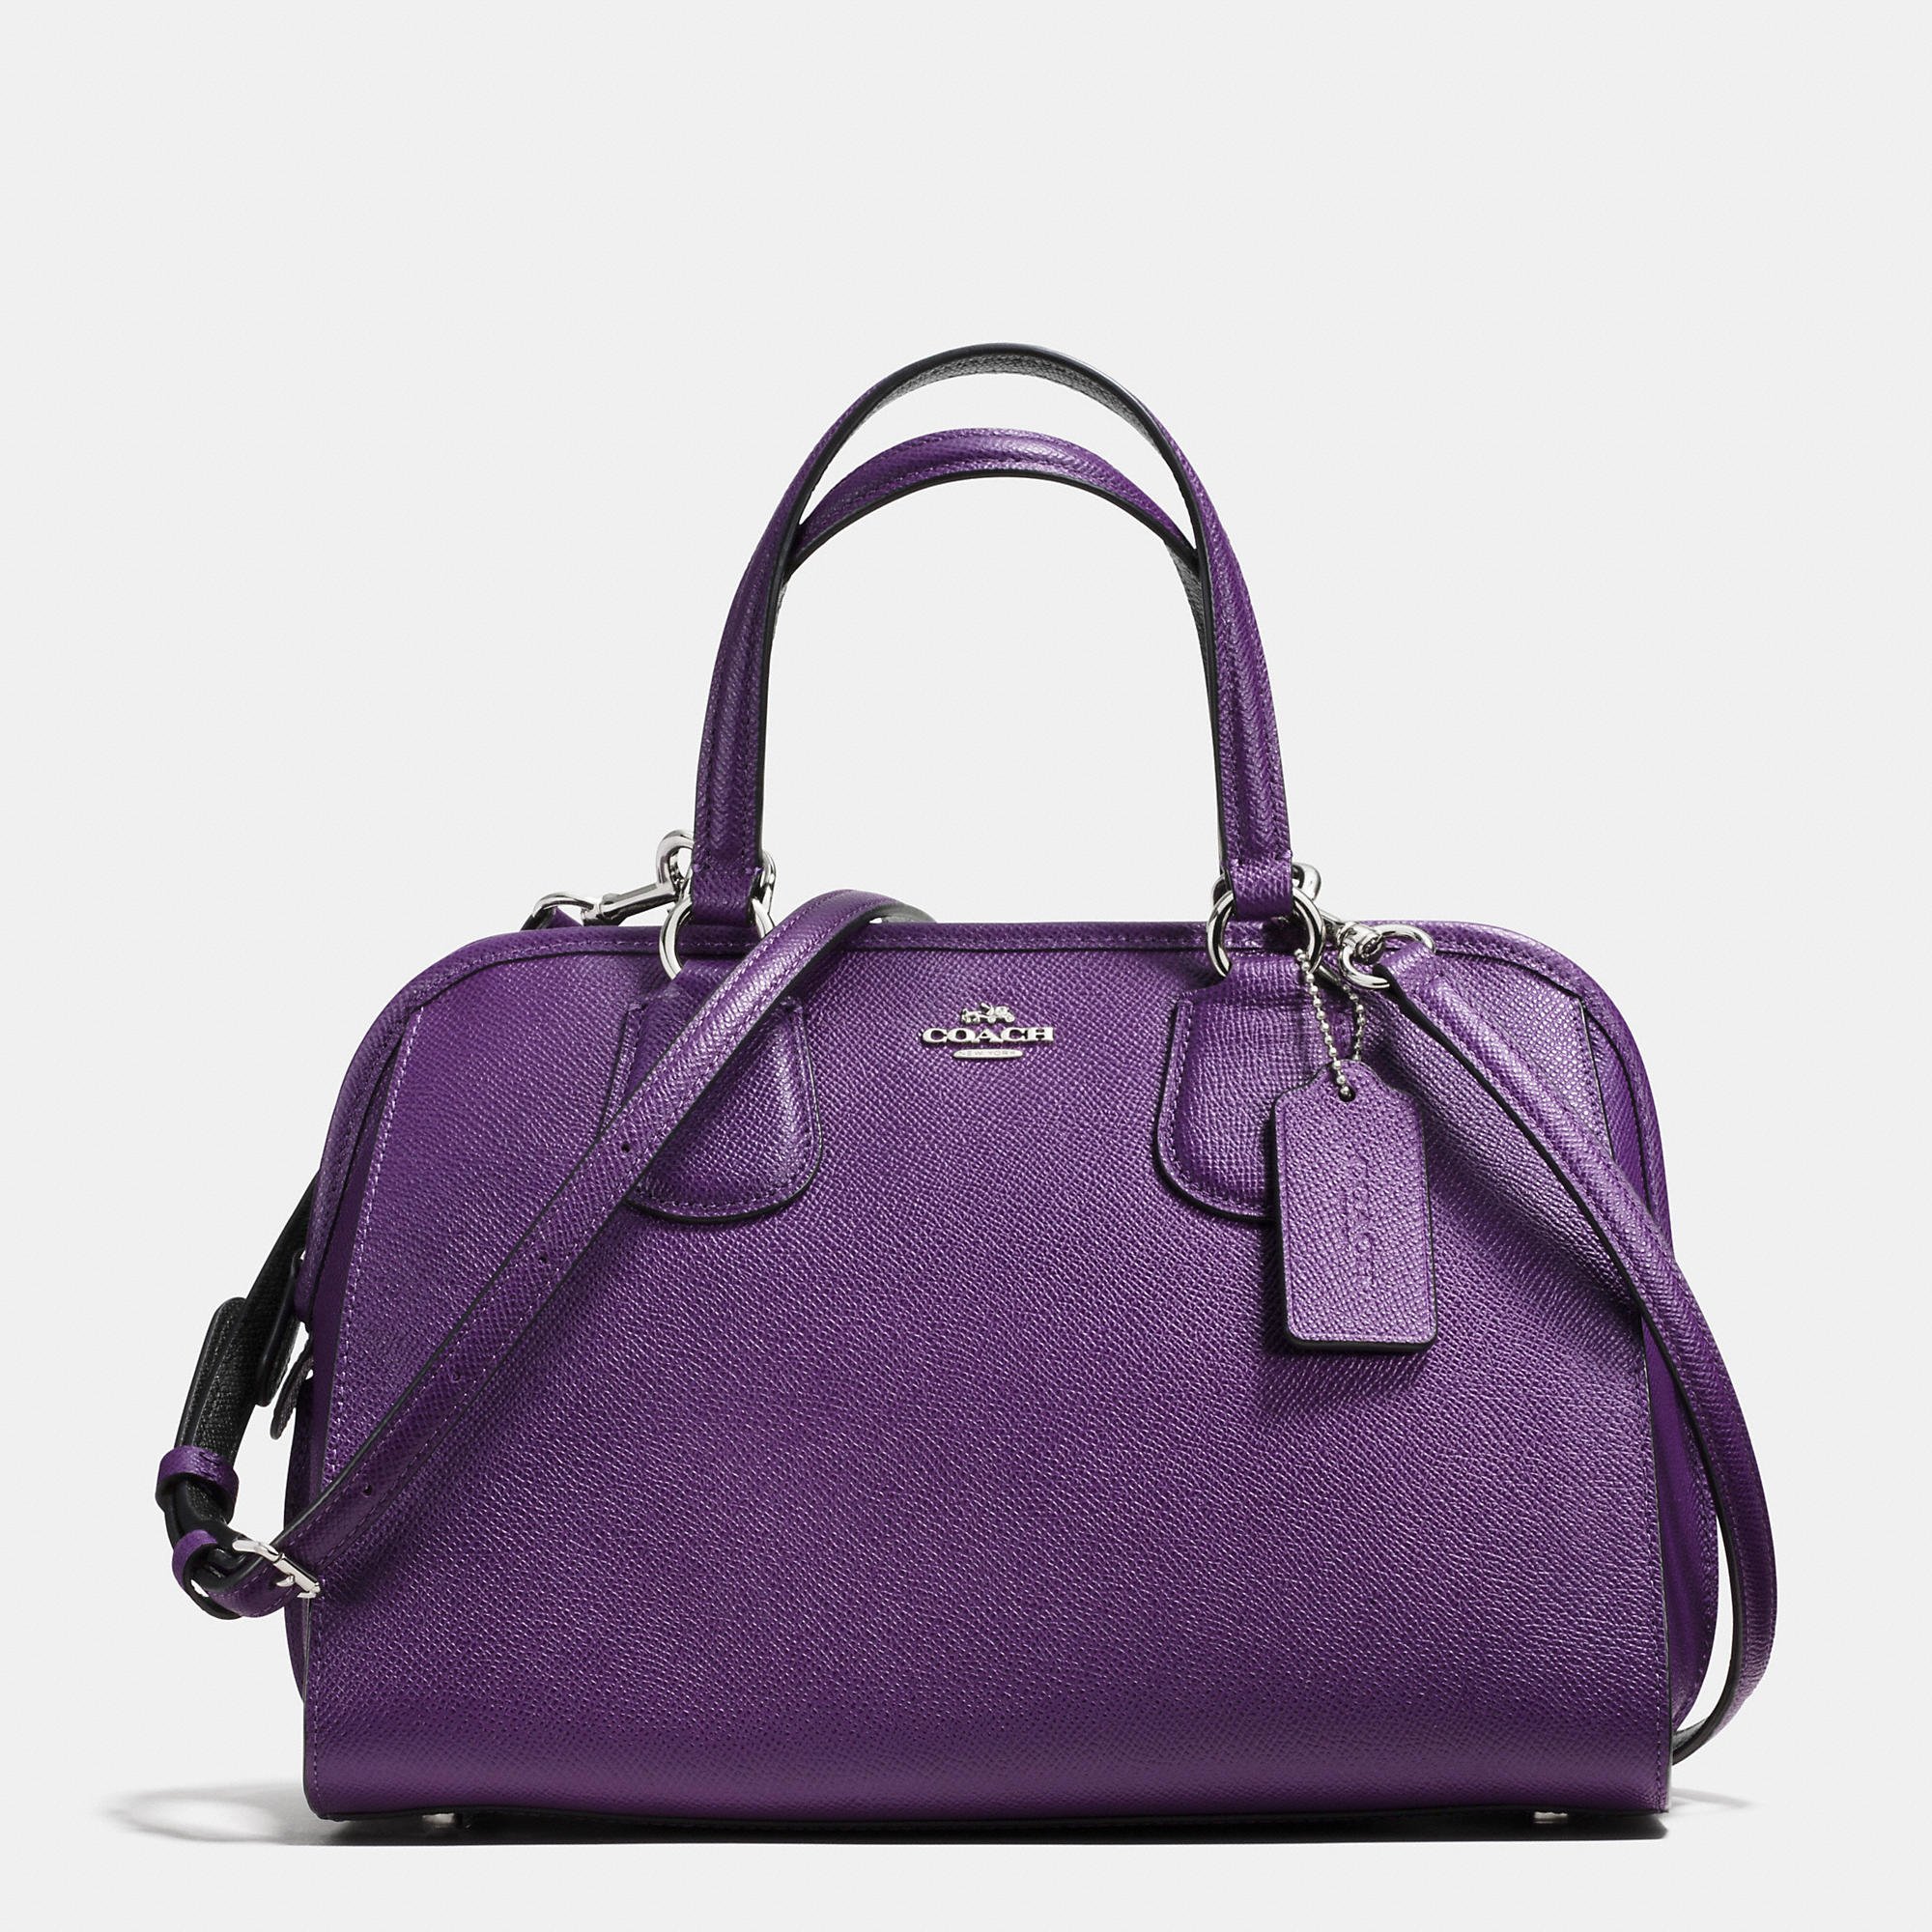 Coach Handbags For Women | semashow.com